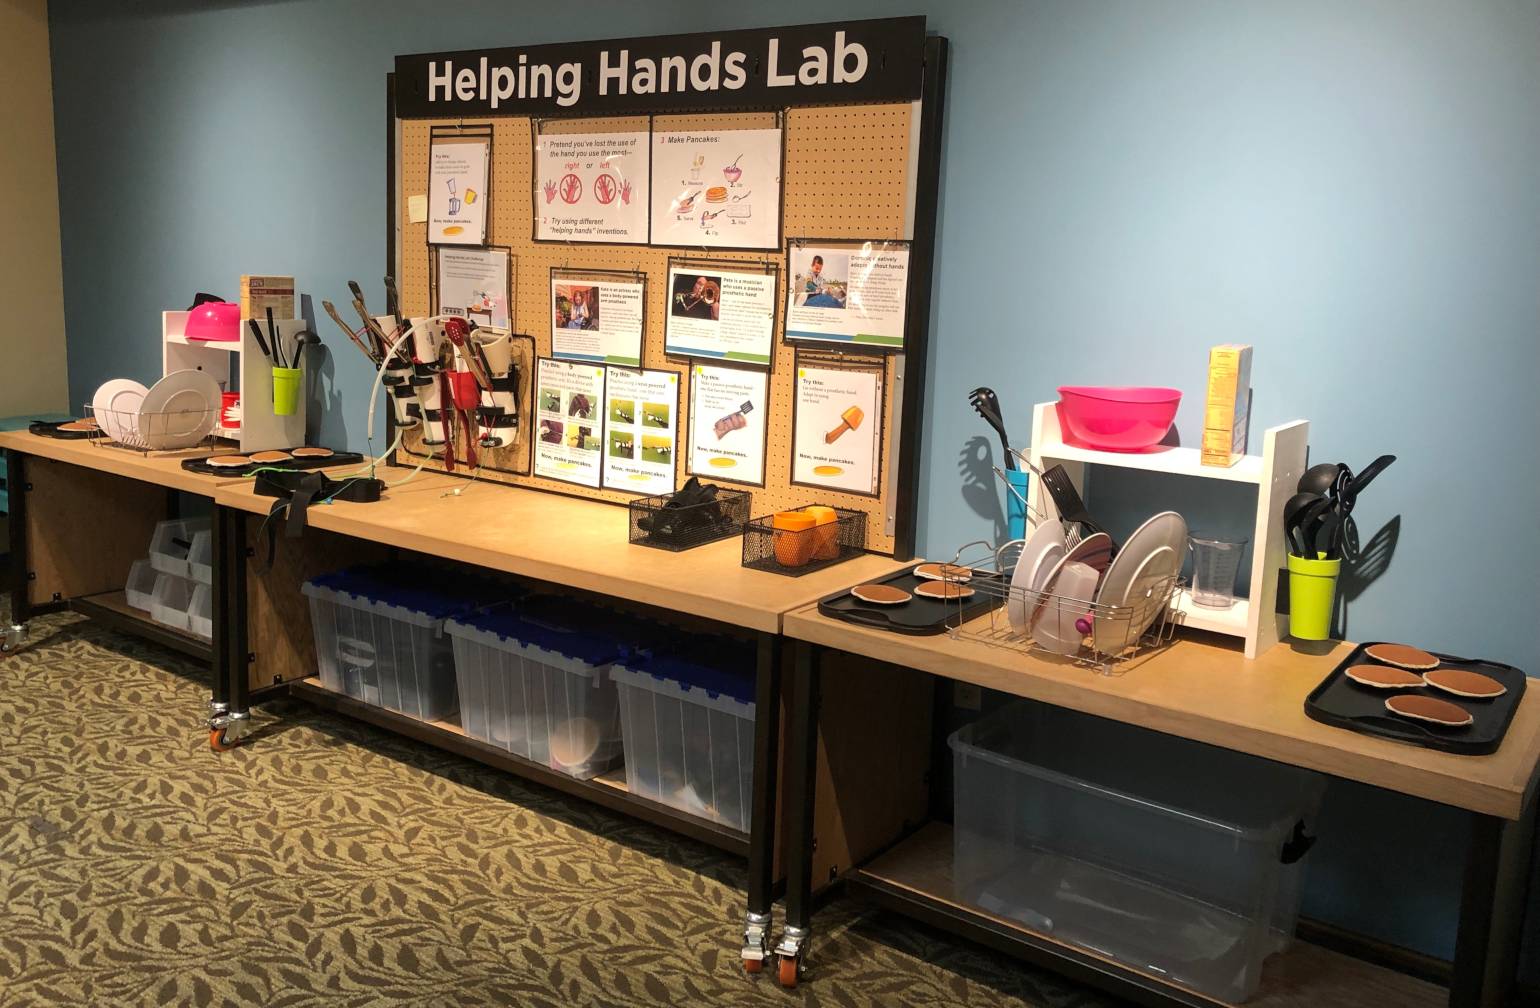 Helping Hands Lab exhibit at the Bakken Museum in Minneapolis